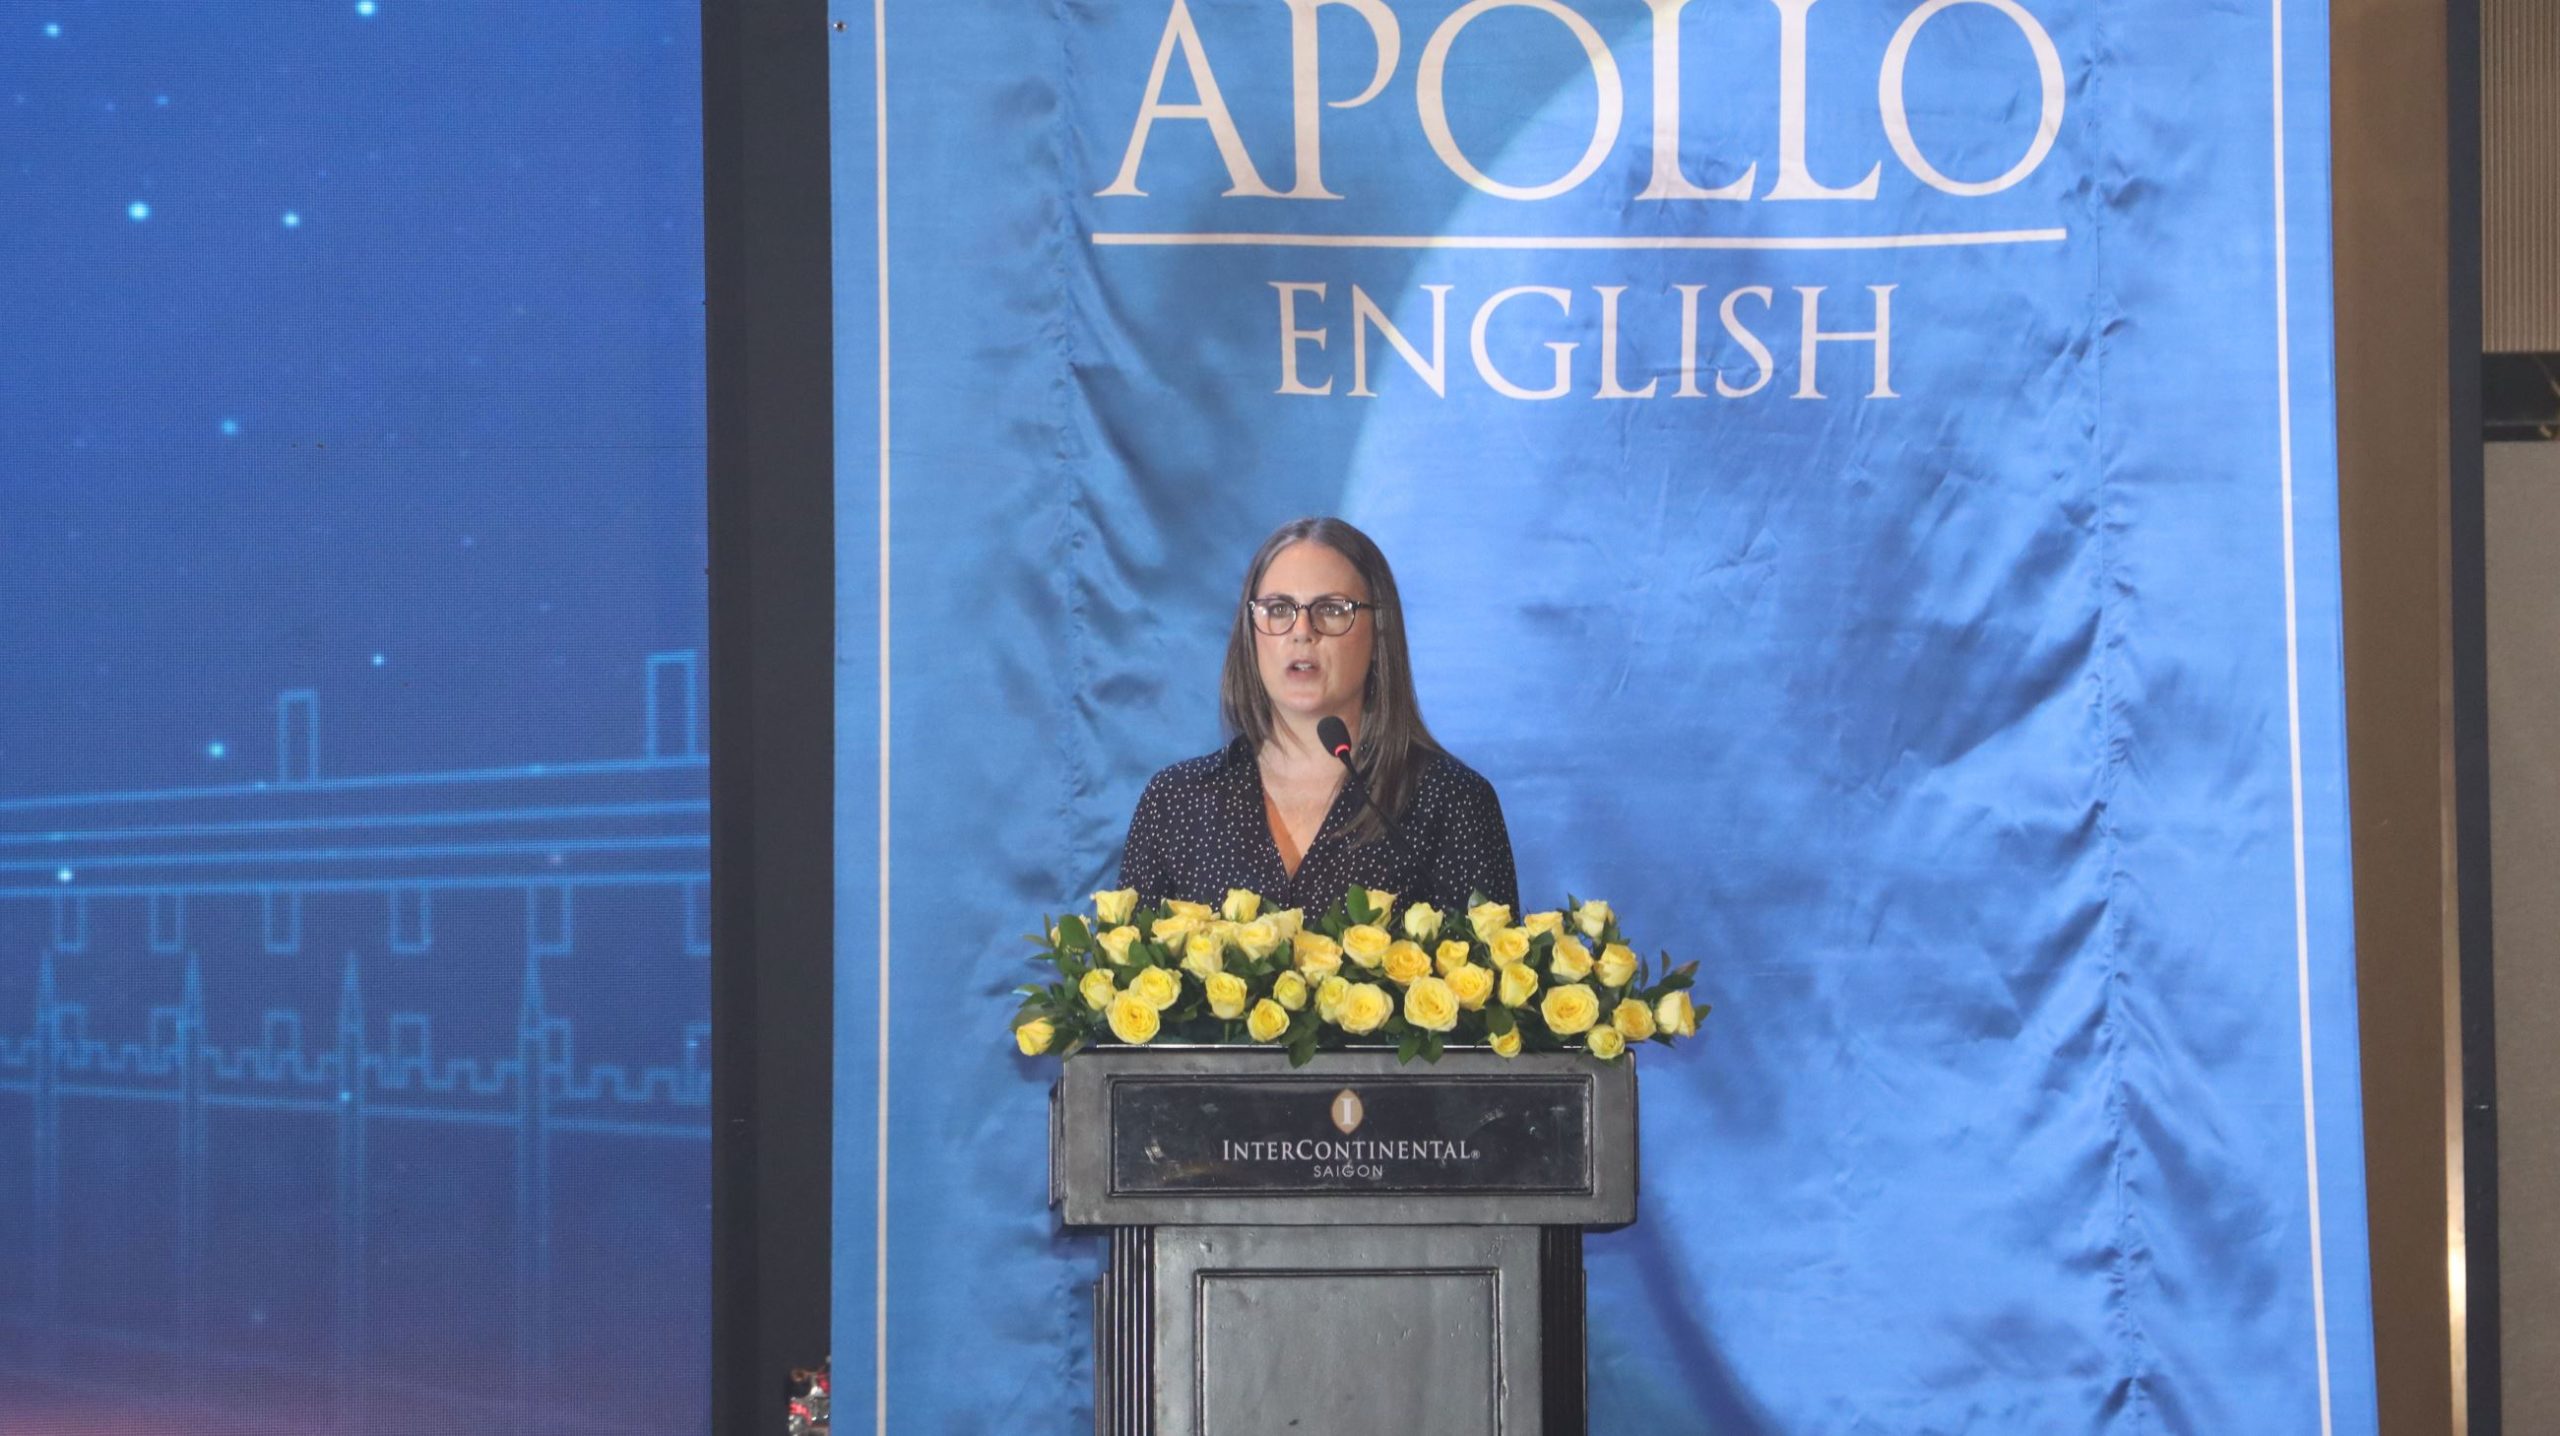 Bà Kate Steenkamp – Giám đốc học vụ cấp cao Apollo English phát biểu tại sự kiện (Ảnh: VietKings).